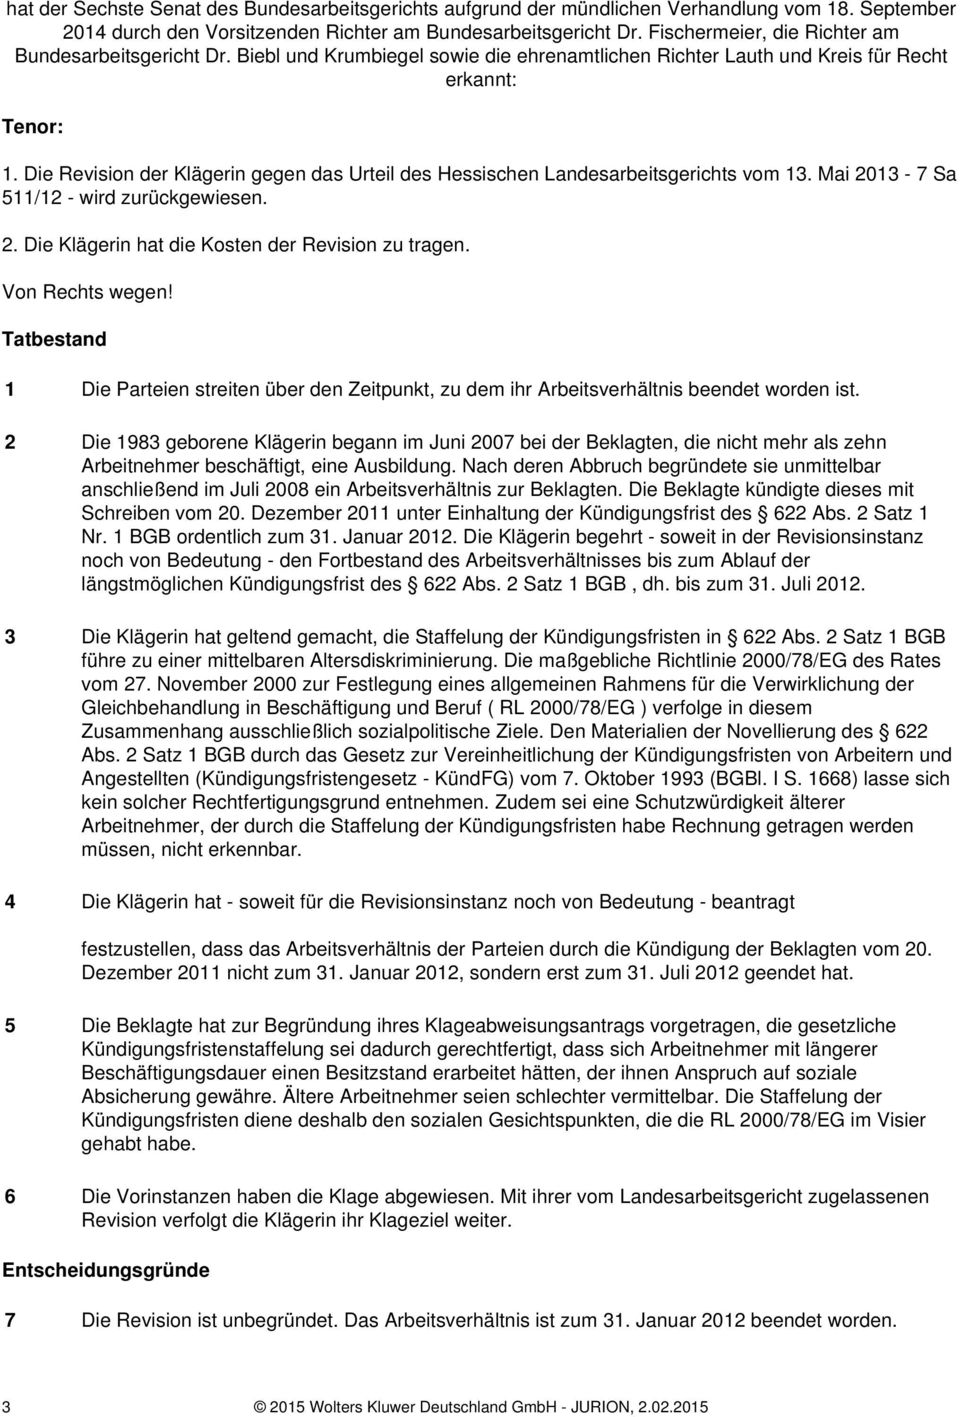 Die Revision der Klägerin gegen das Urteil des Hessischen Landesarbeitsgerichts vom 13. Mai 2013-7 Sa 511/12 - wird zurückgewiesen. 2. Die Klägerin hat die Kosten der Revision zu tragen.